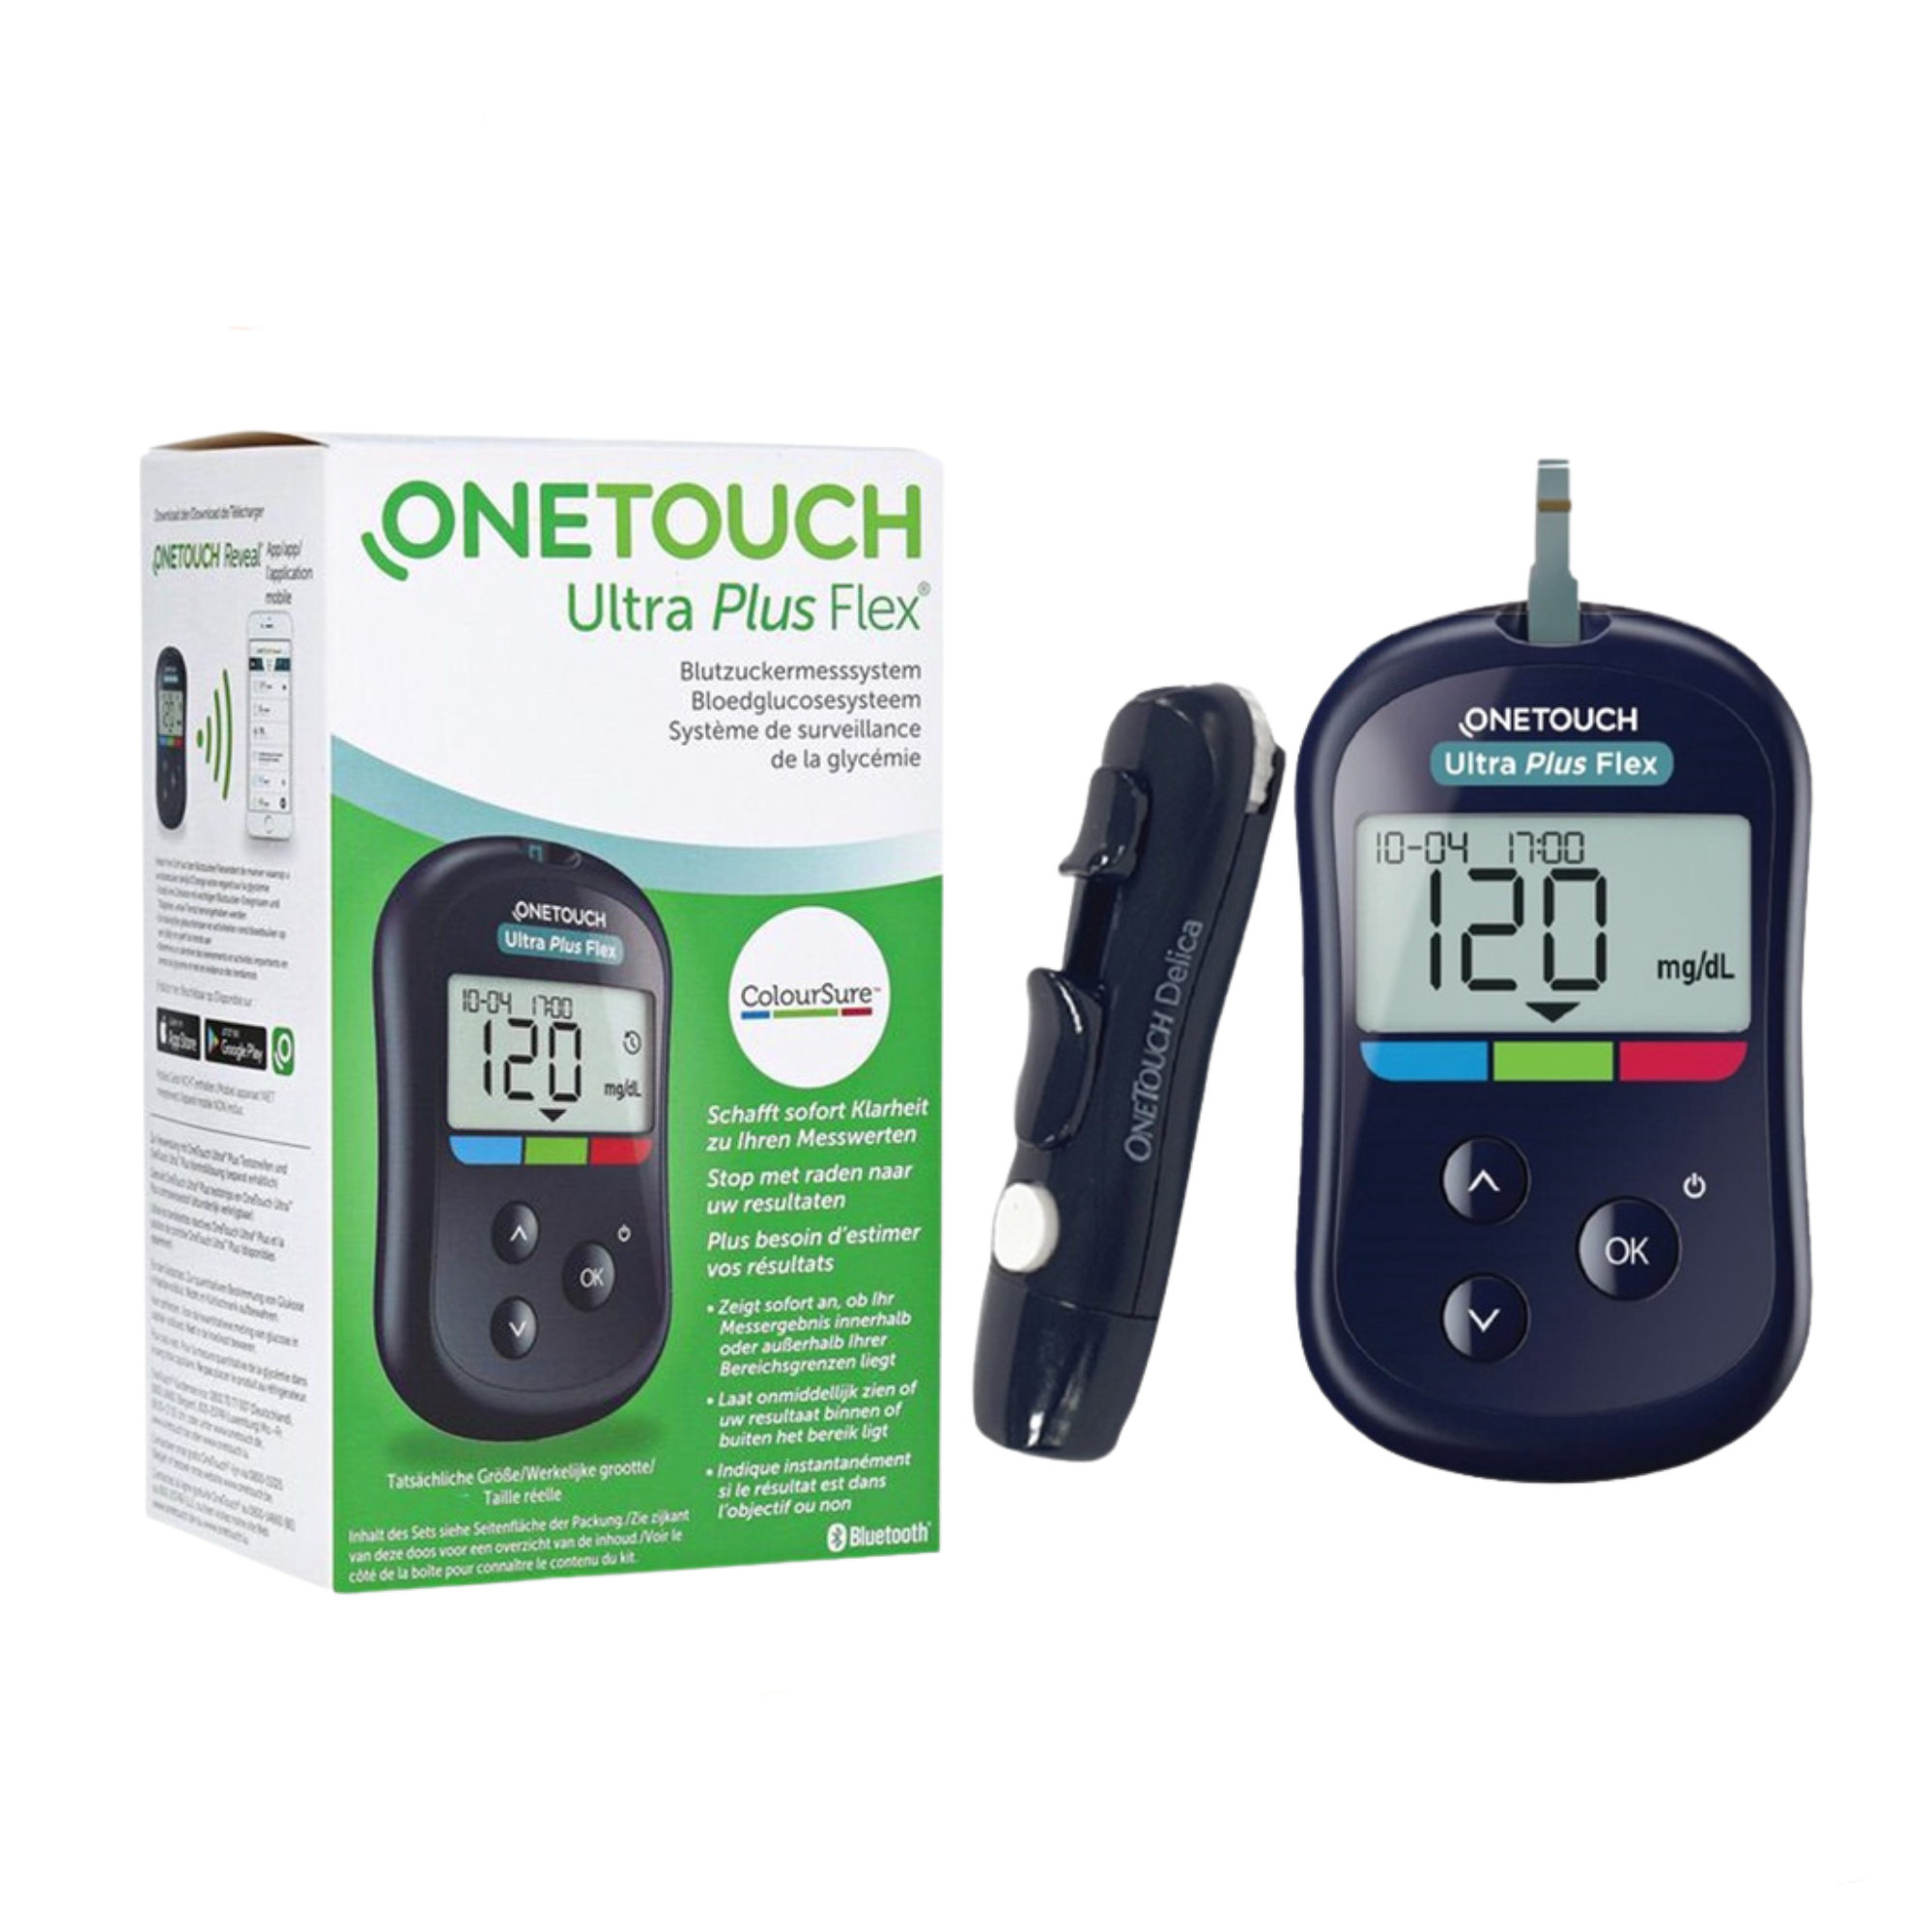 Máy đo đường huyết OneTouch Ultra Plus Flex dễ dàng sử dụng phù hợp với mọi độ tuổi